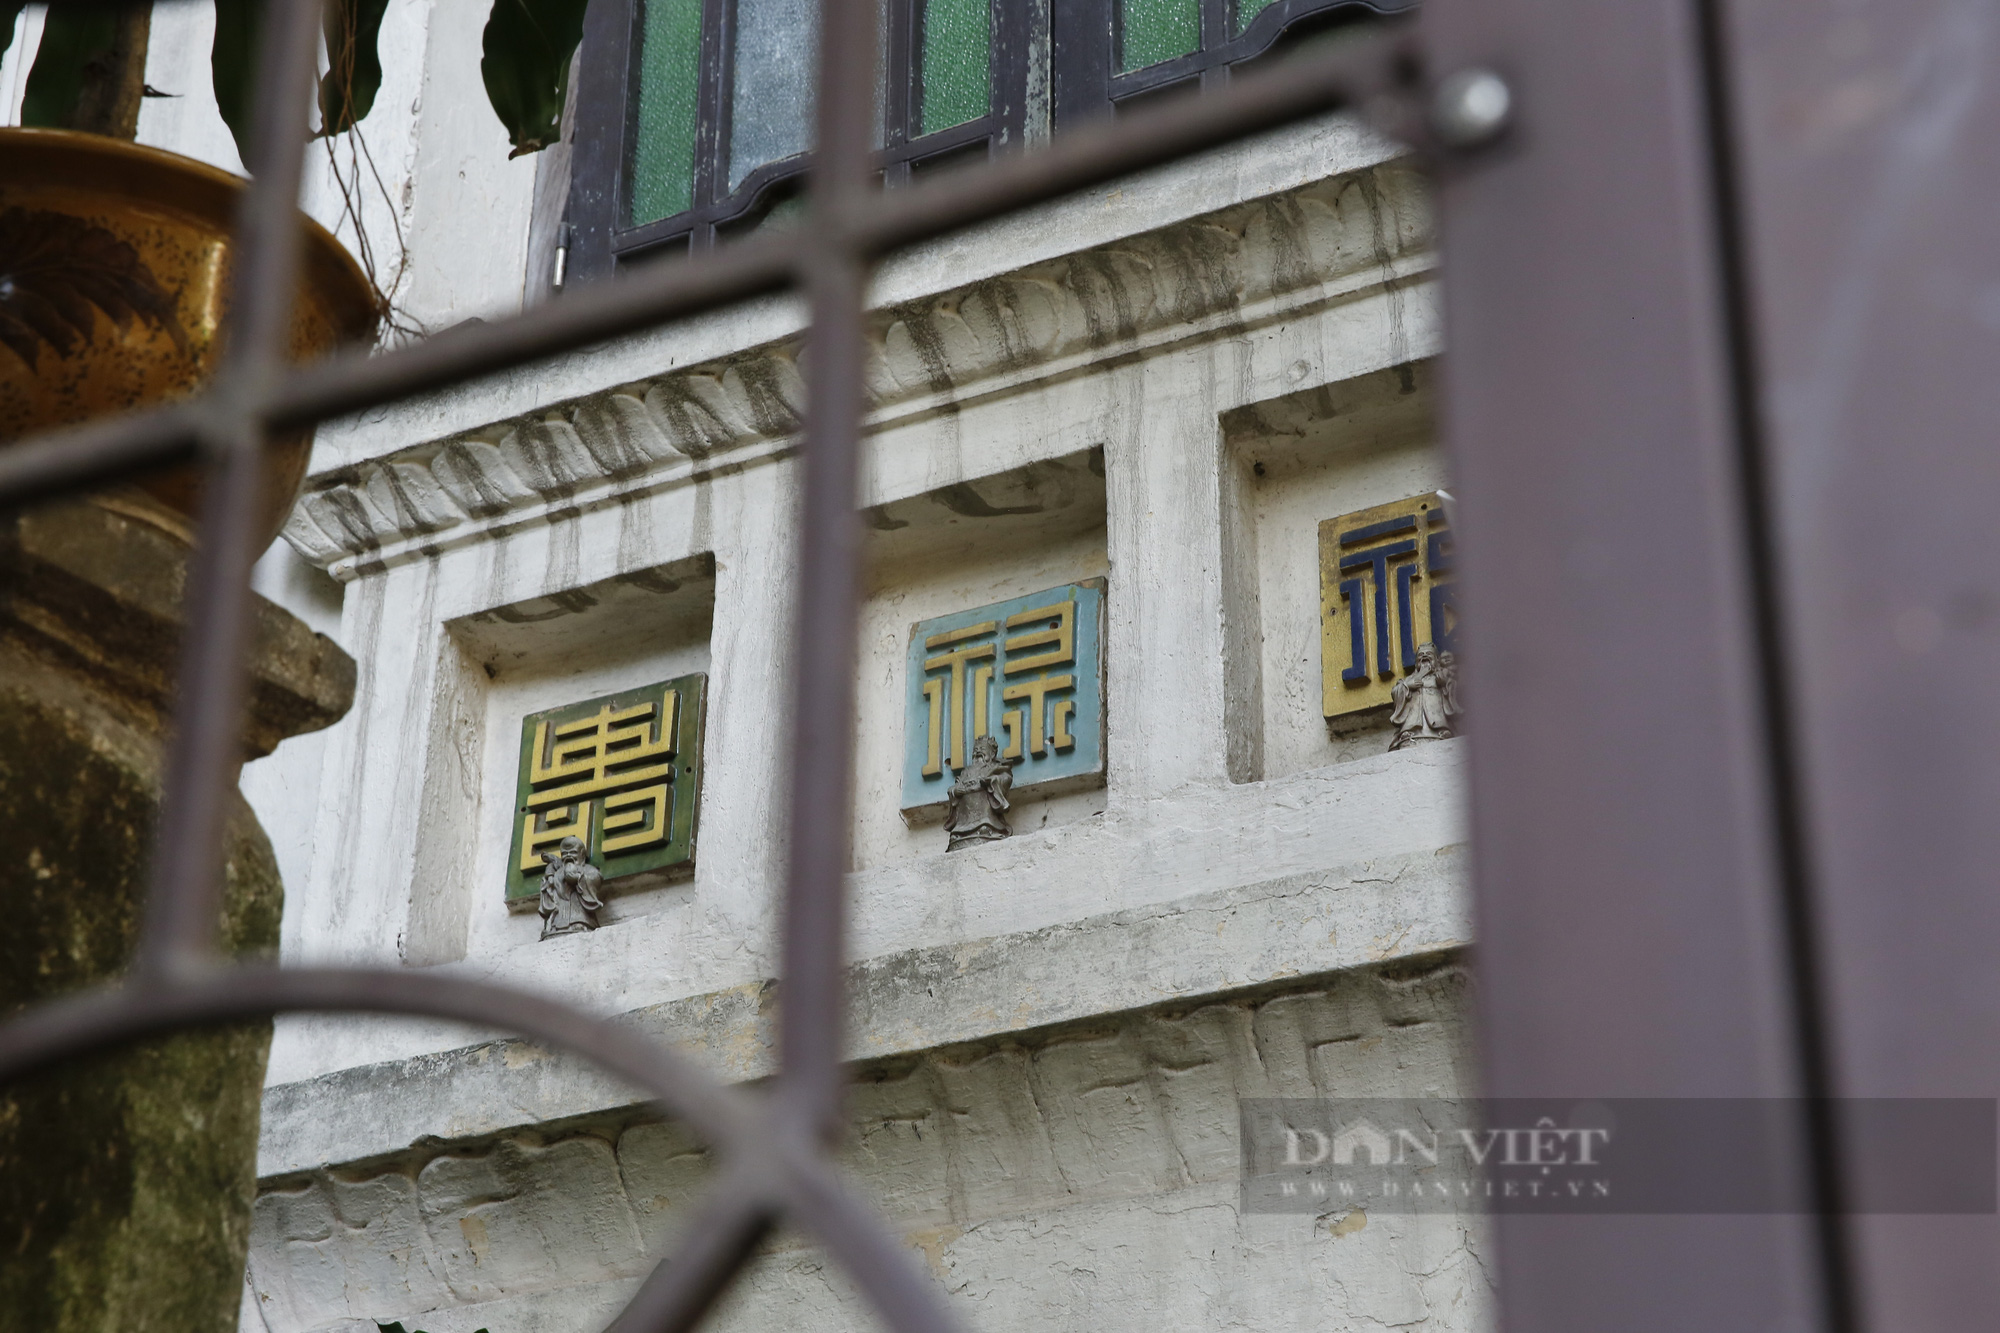 Xót xa nhìn biệt thự 100 tuổi đẹp nức tiếng ở Hà Nội bị xâm lấn nghiêm trọng  - Ảnh 5.